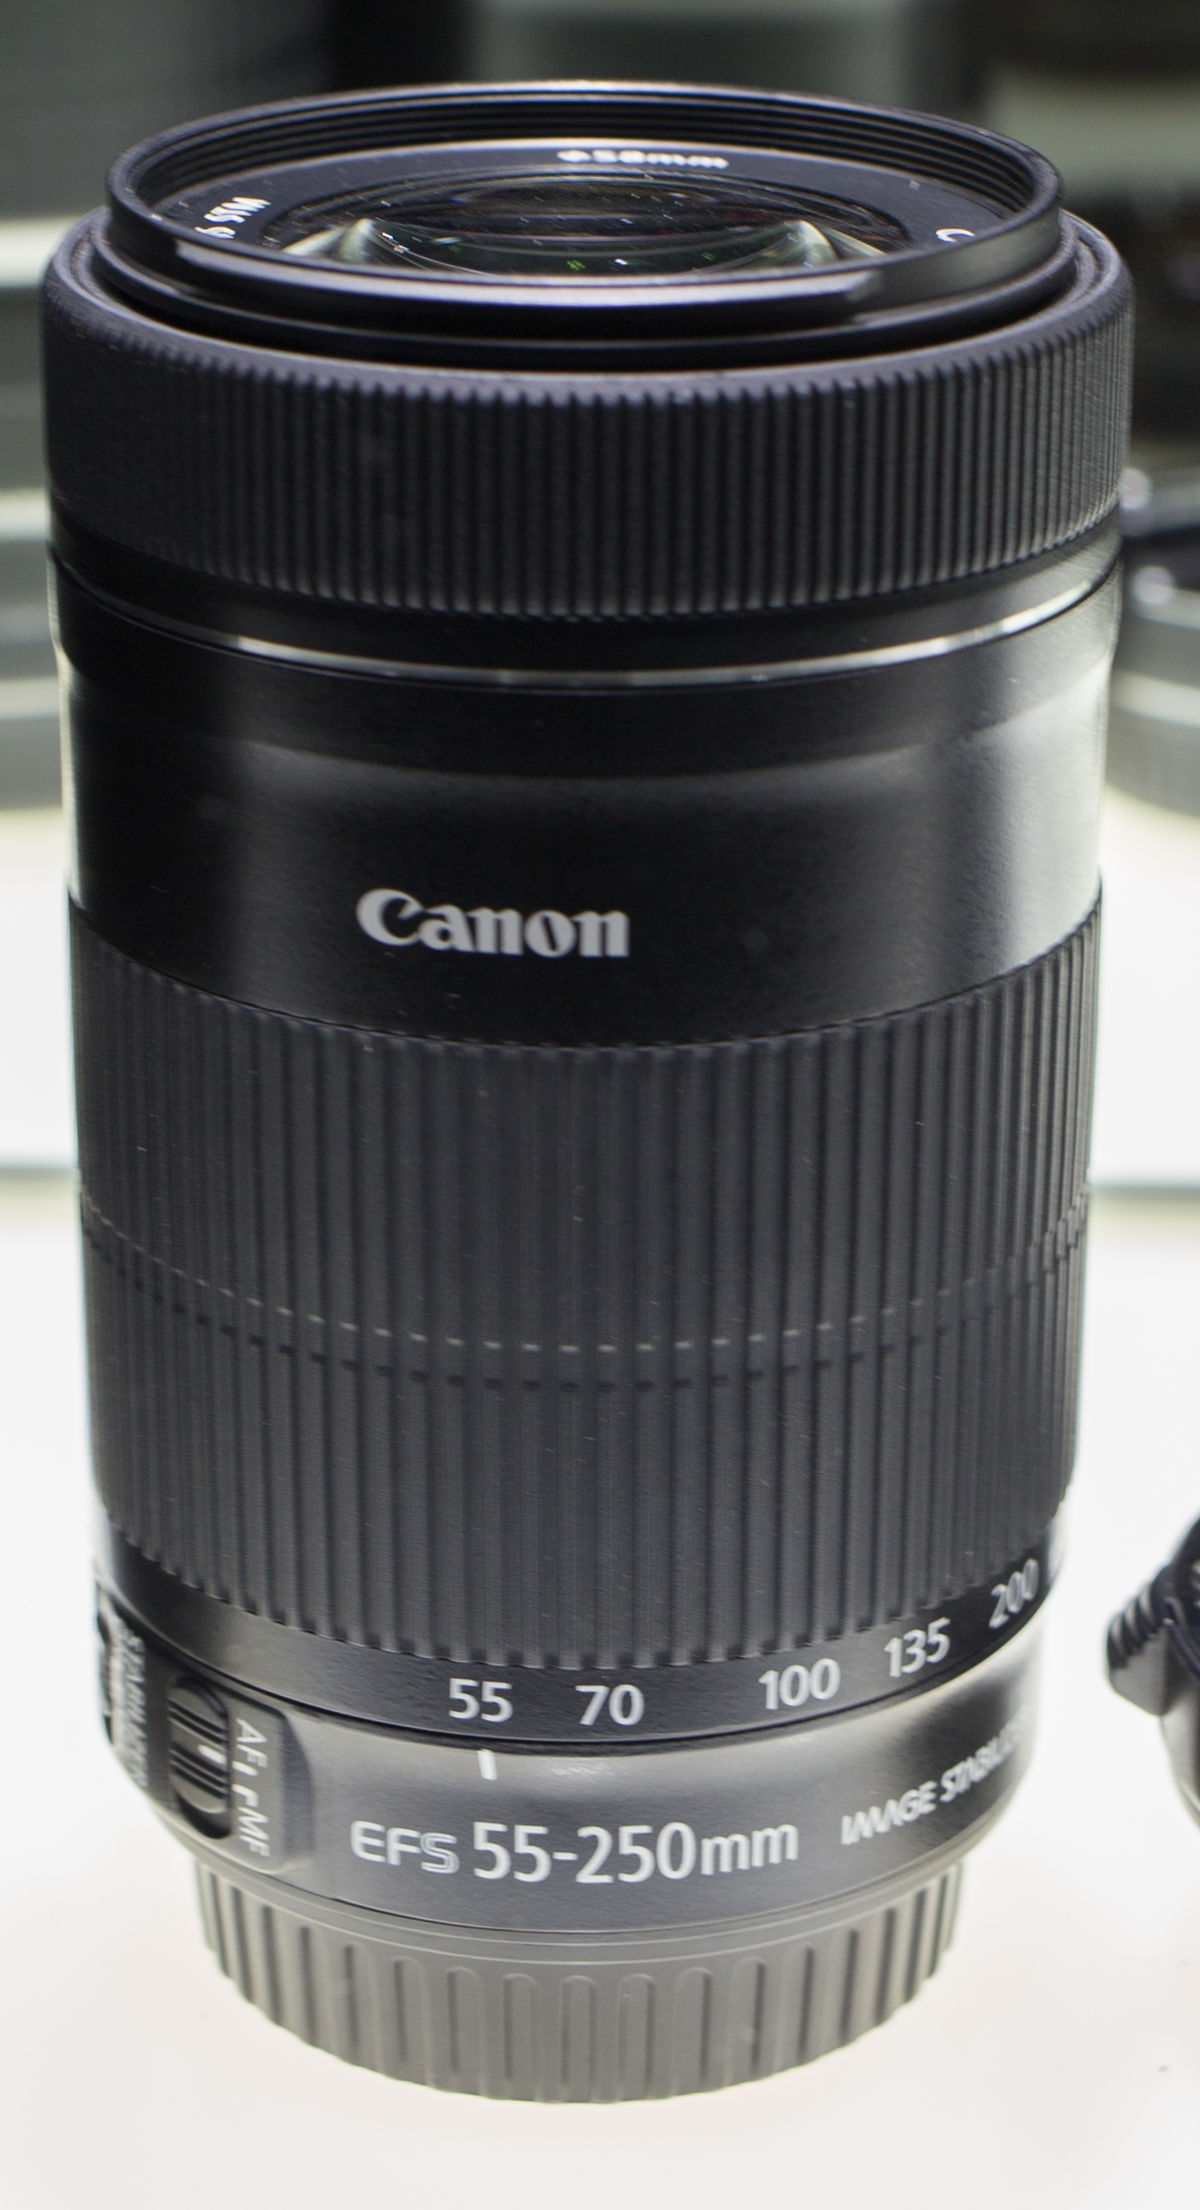 File:Canon EFS 55-250 STM.jpg - Wikimedia Commons